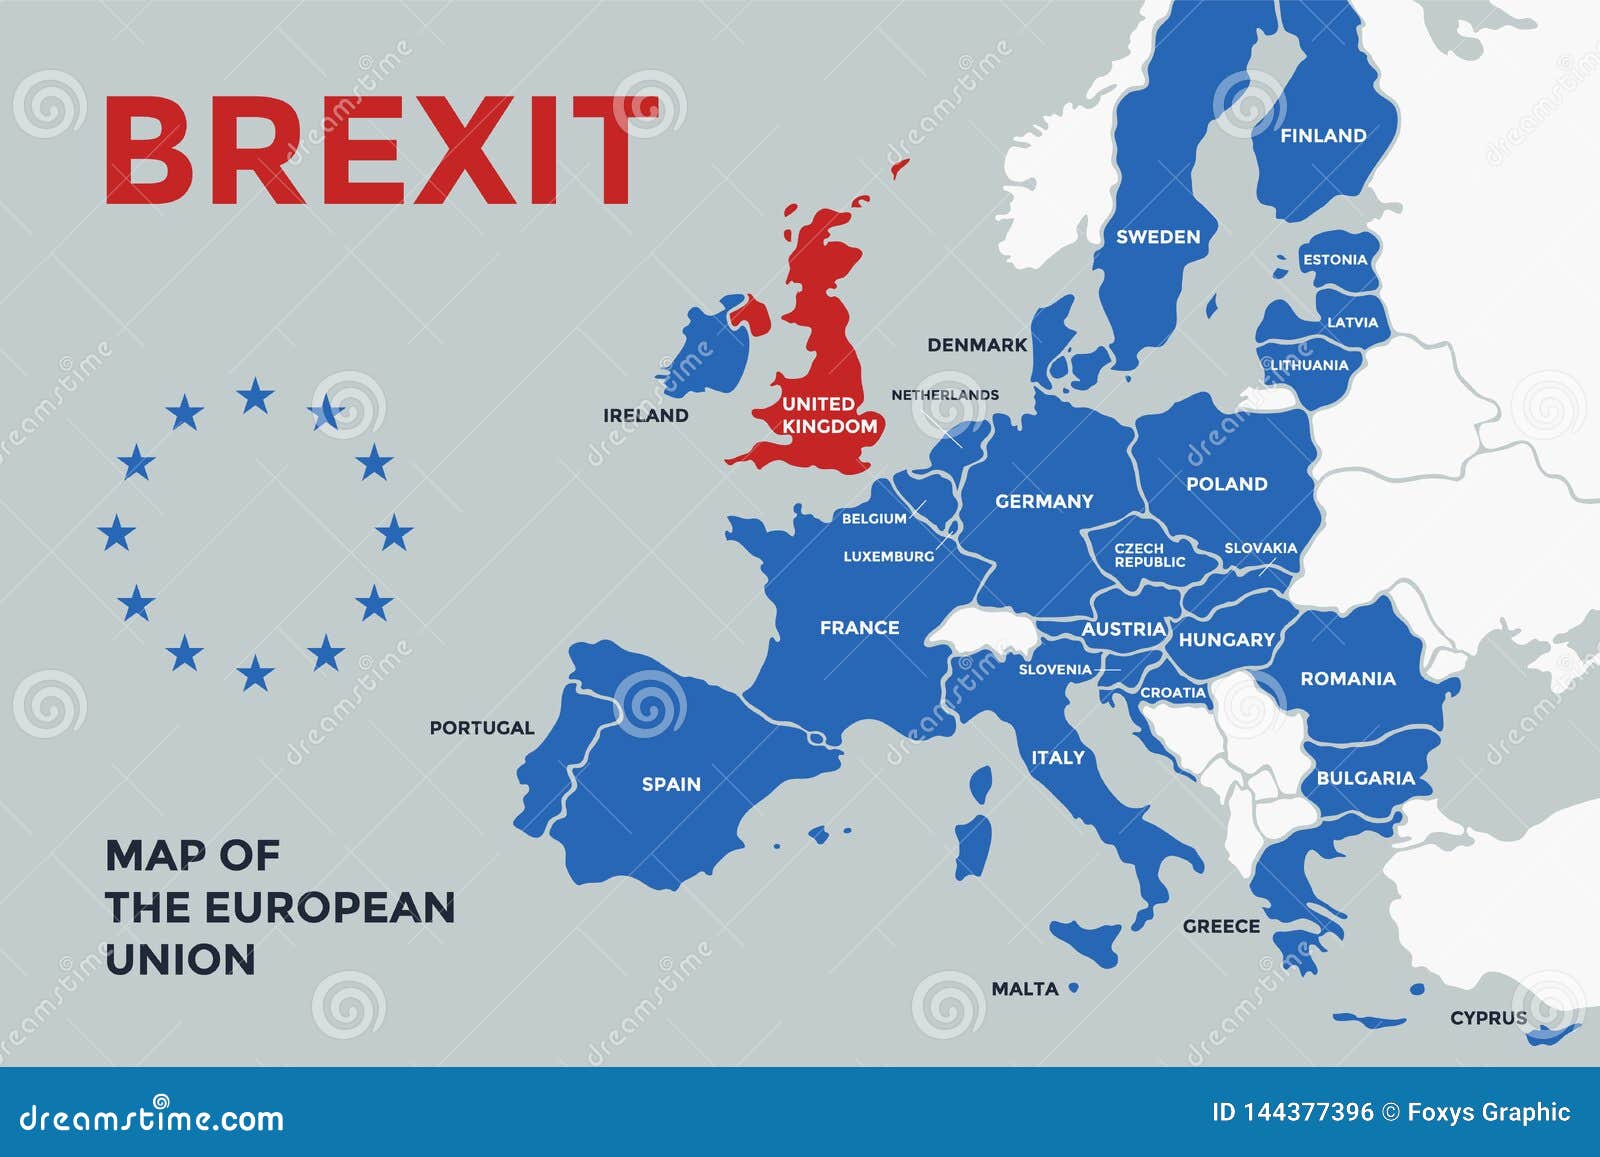 Eu что за страна. ЕС на карте без Великобритании страны. Карта Евросоюза. Страны ЕС на карте. Европейский Союз страны.